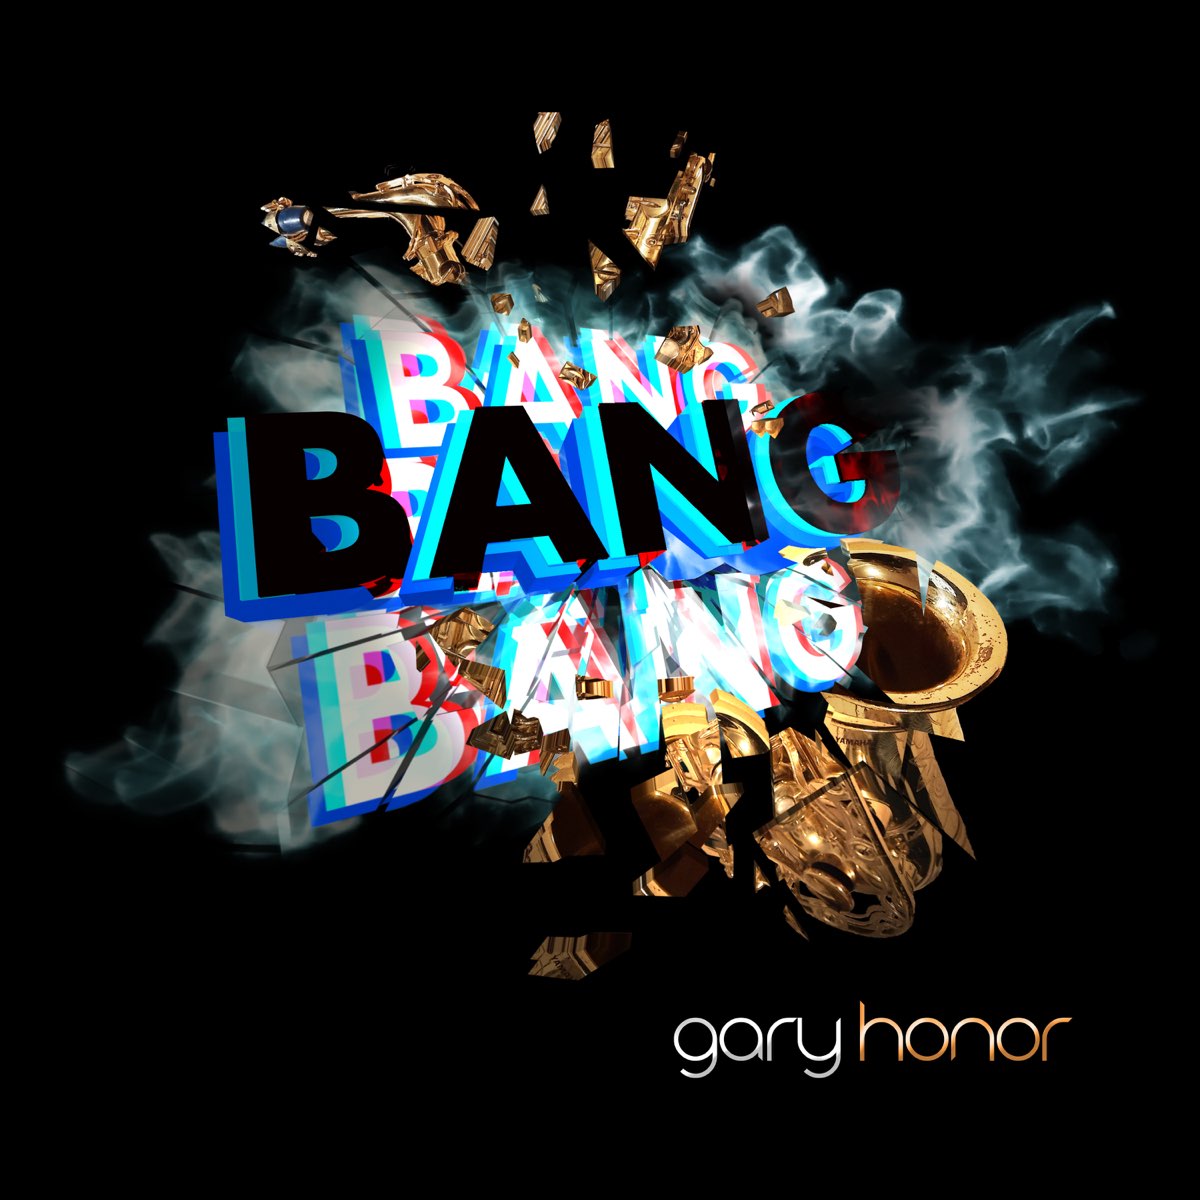 Bang bang text